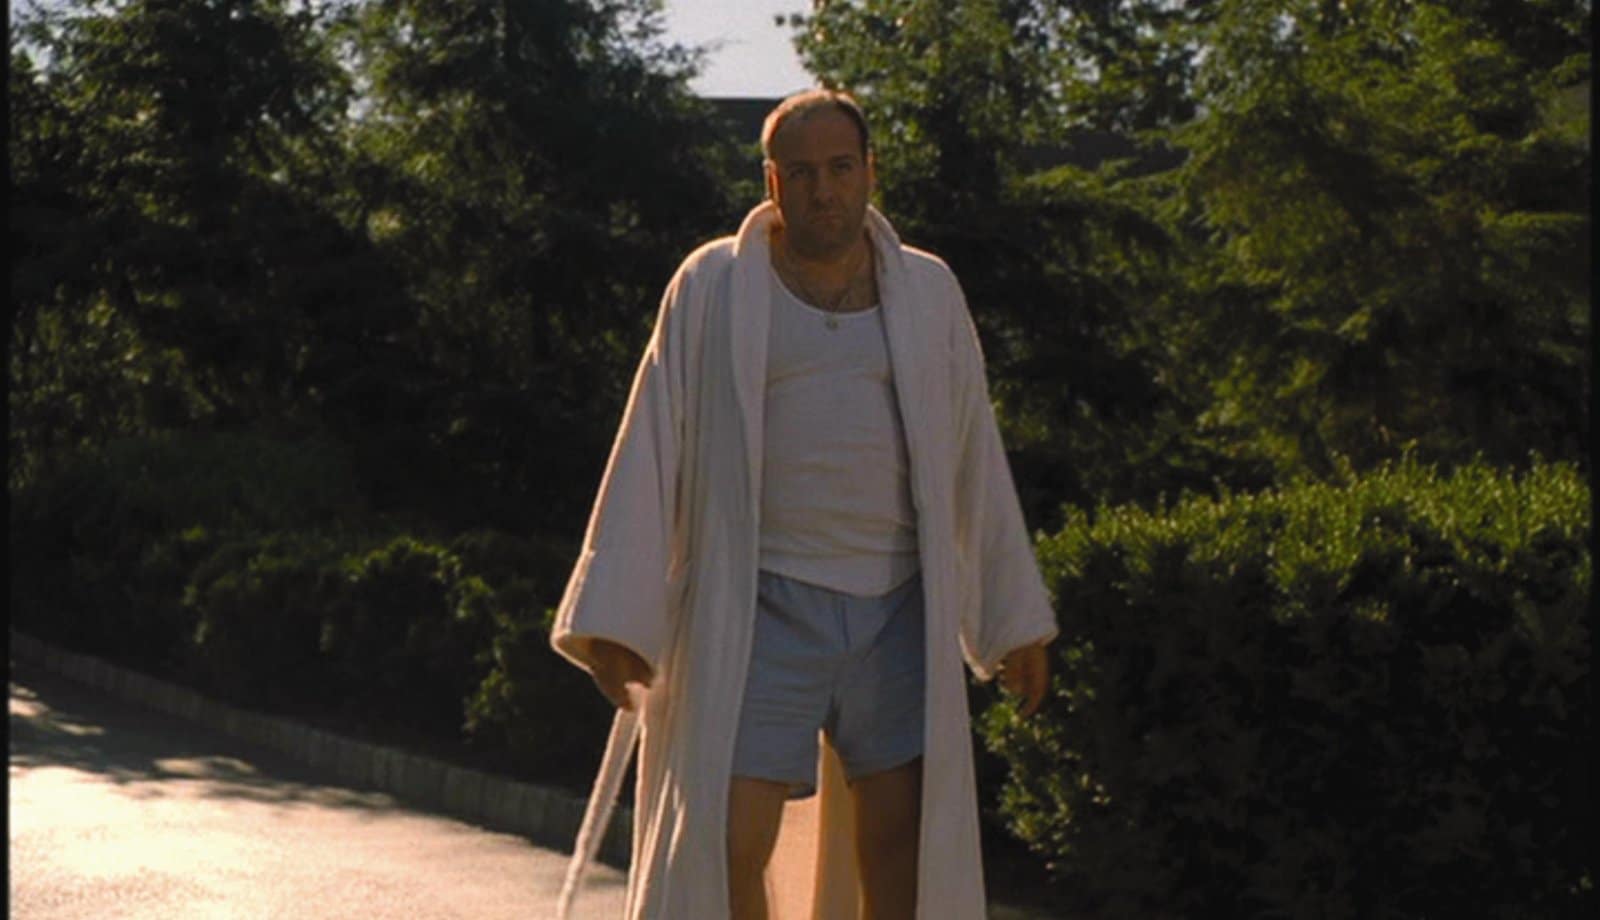 7. Tony Soprano Shouldn’t Have Worn Shorts.